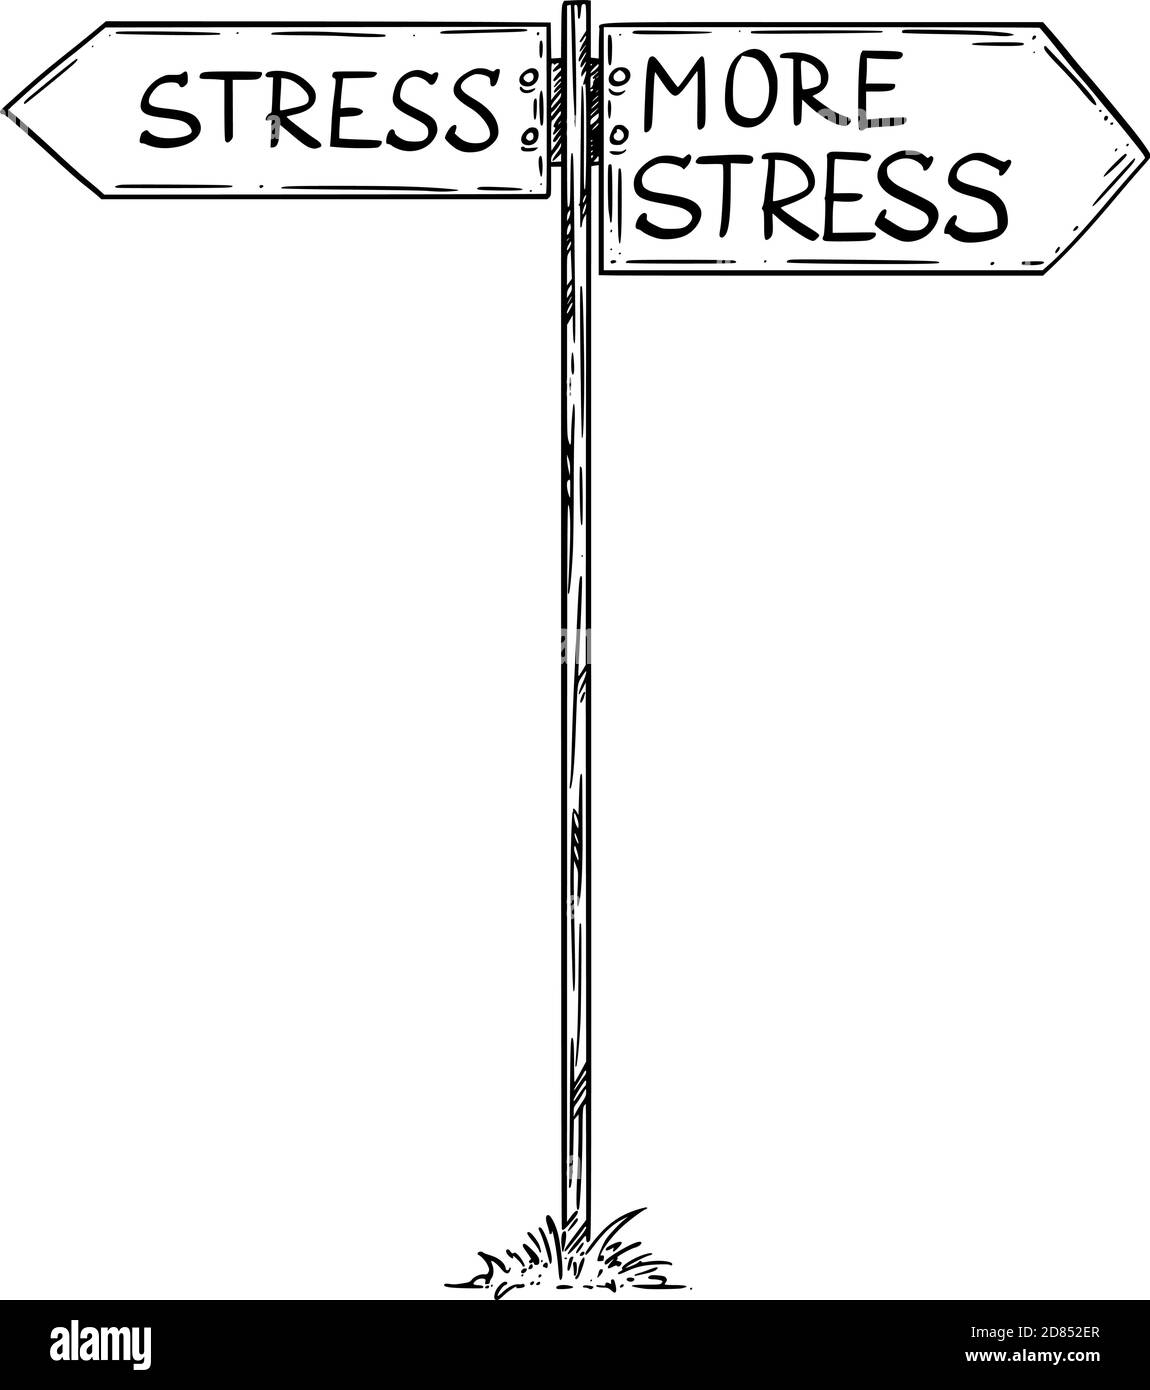 Vektorgrafik Cartoon Illustration von Stress oder mehr Stress zur Auswahl. Verkehrsschild mit nach links und rechts zeigenden Richtungspfeilen. Stock Vektor